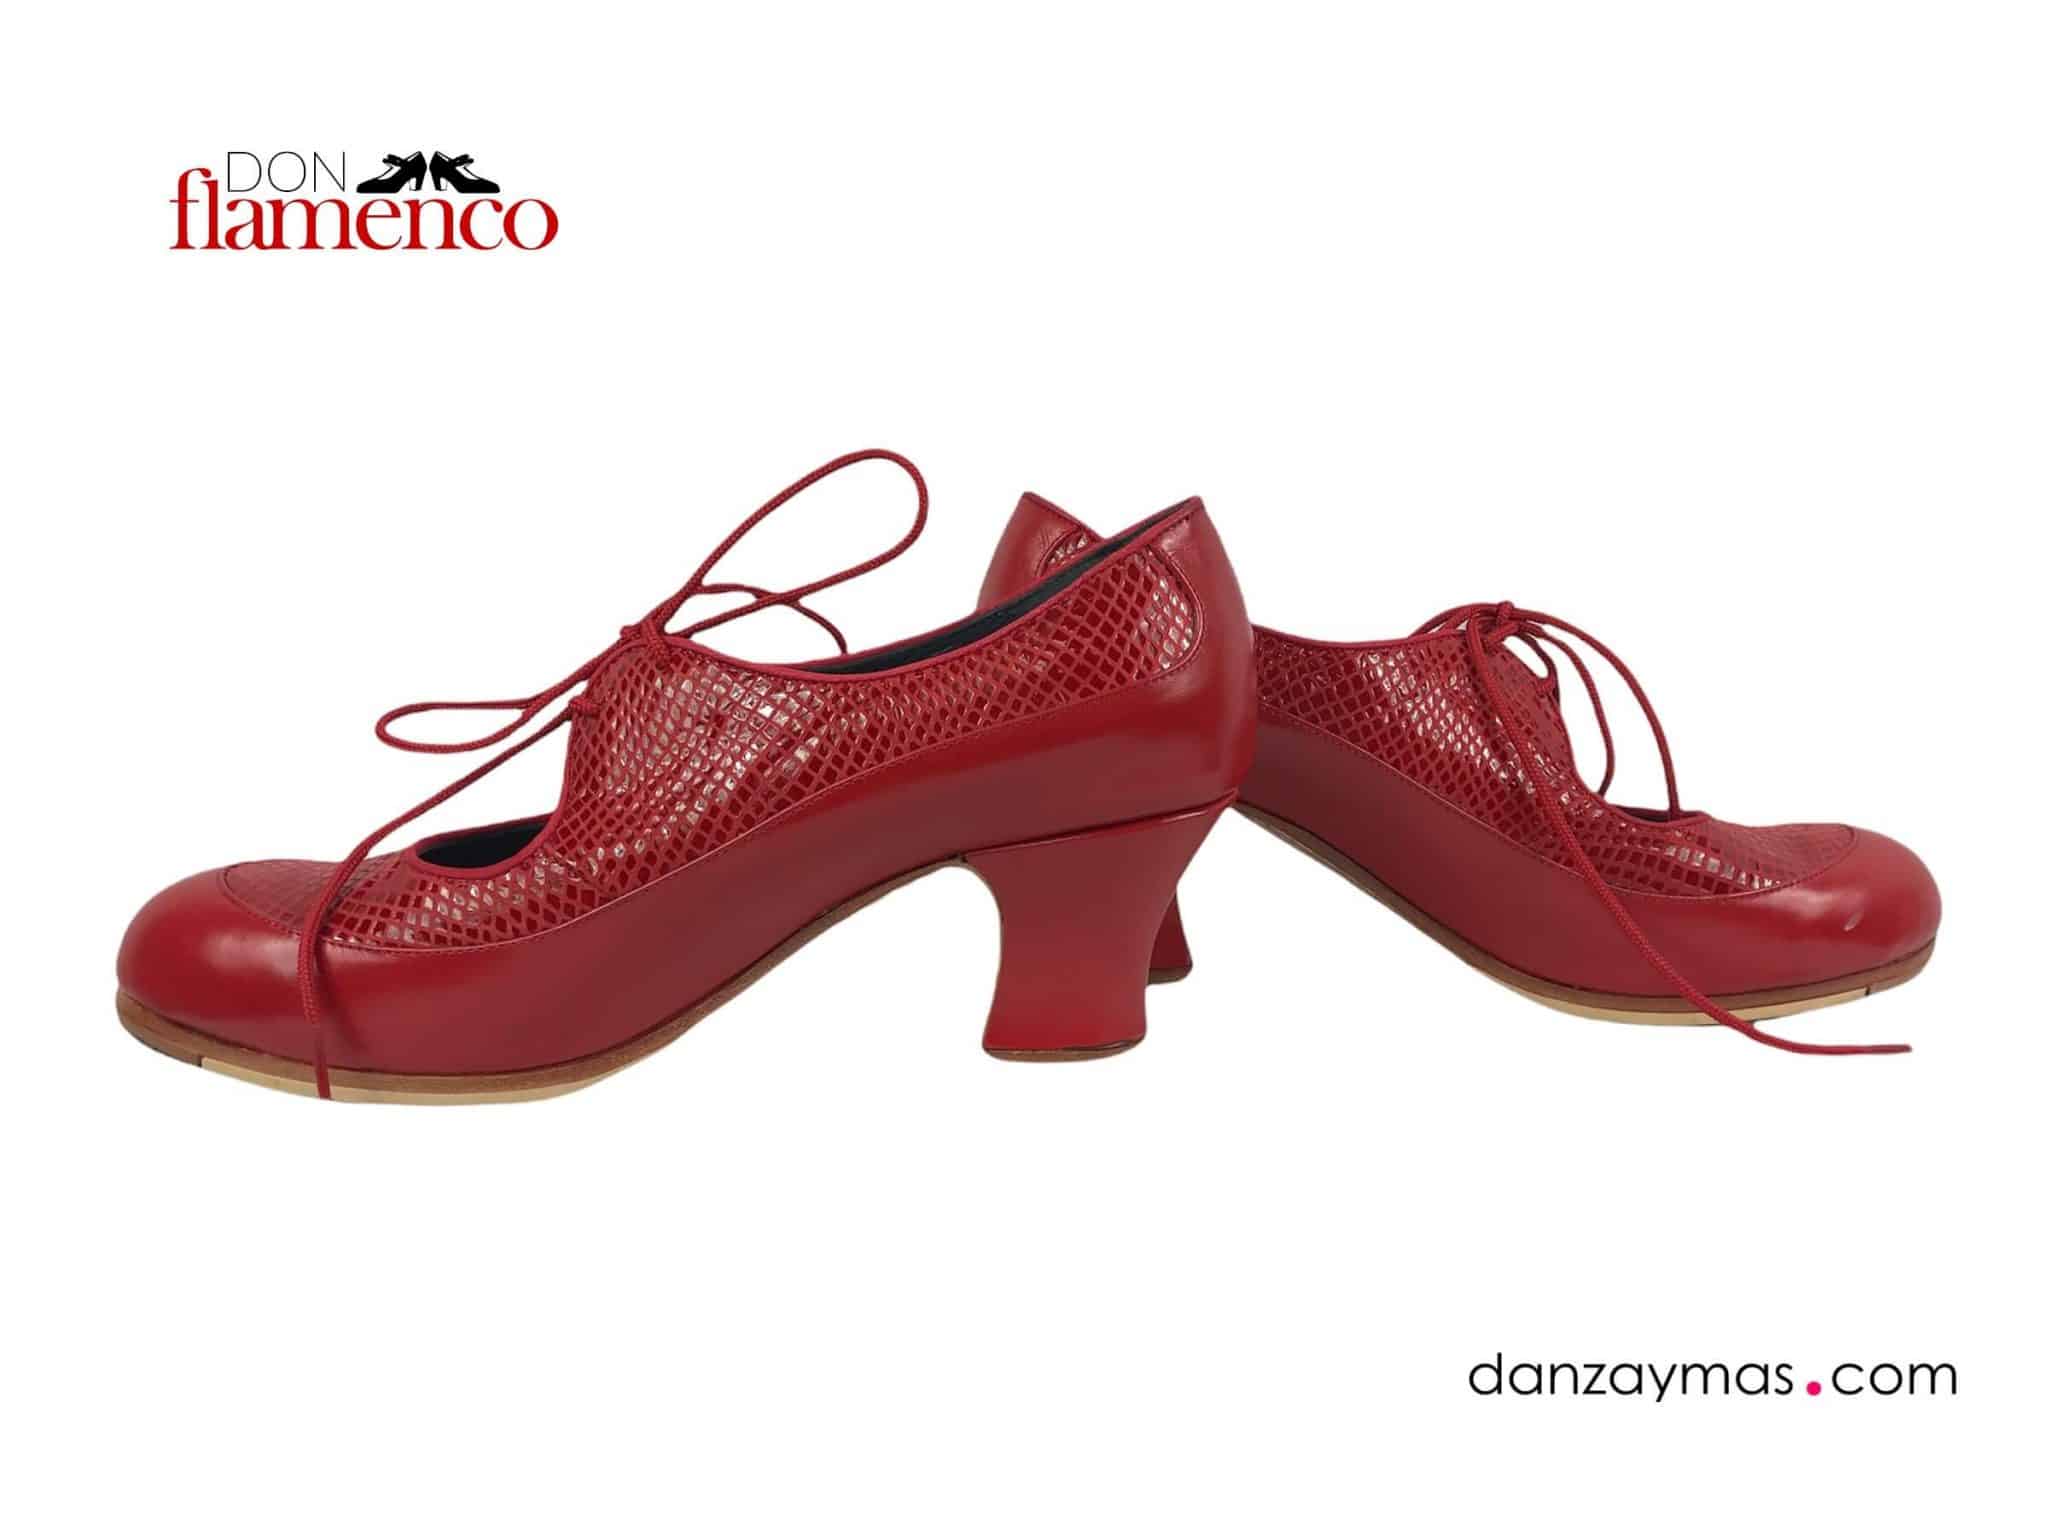 María Combinado - Professional flamenco shoe